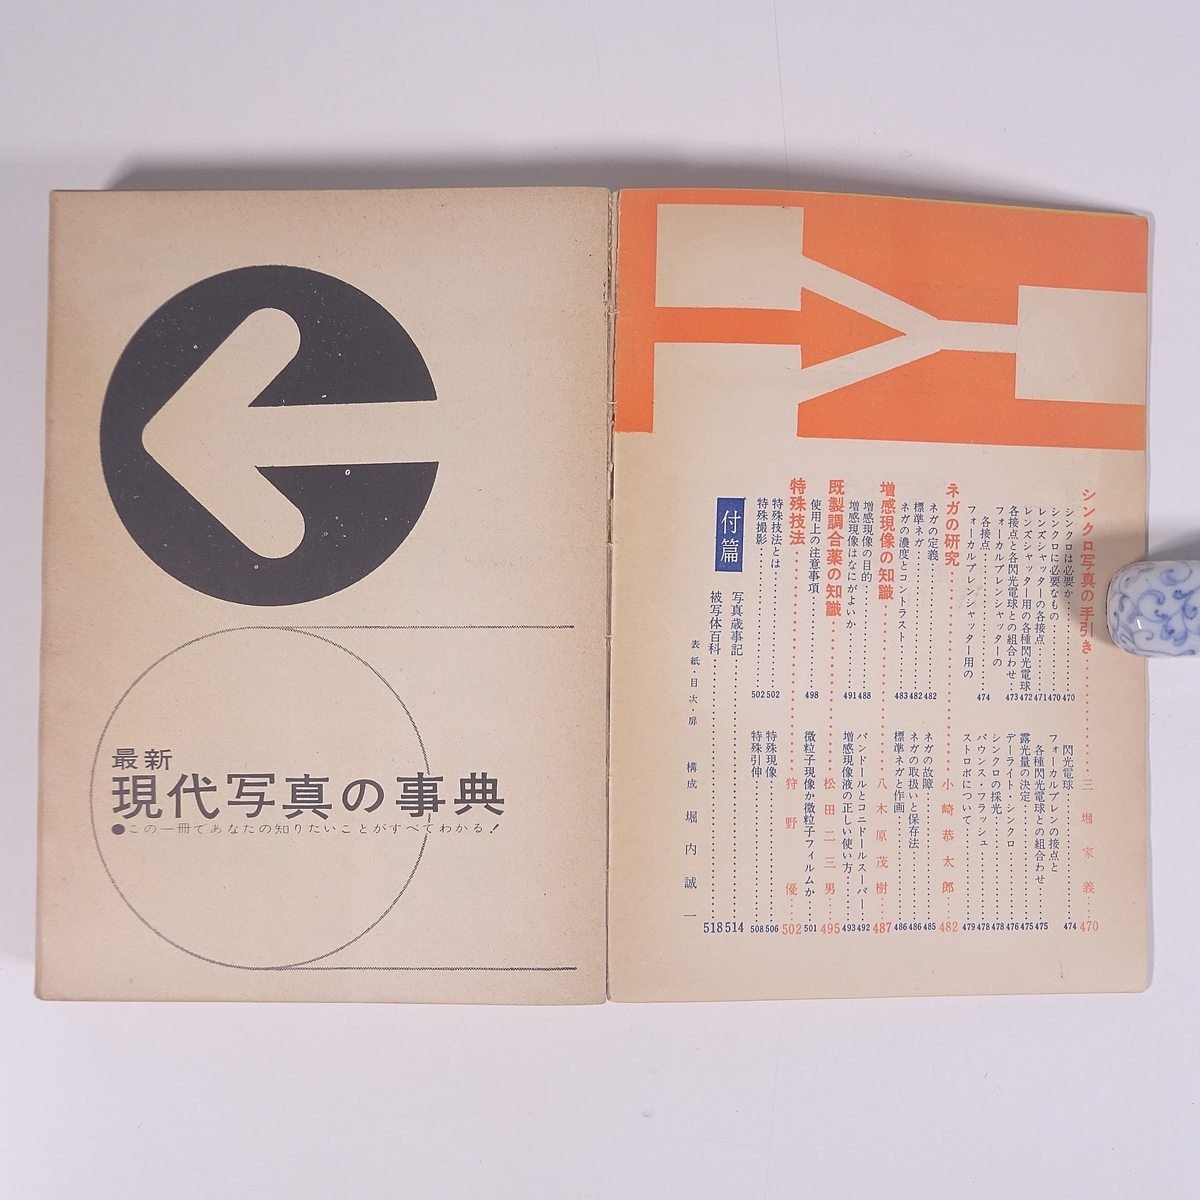 最新 現代写真の事典 日本カメラ臨時増刊 日本カメラ社 1962 単行本 カメラ 写真 撮影_画像6